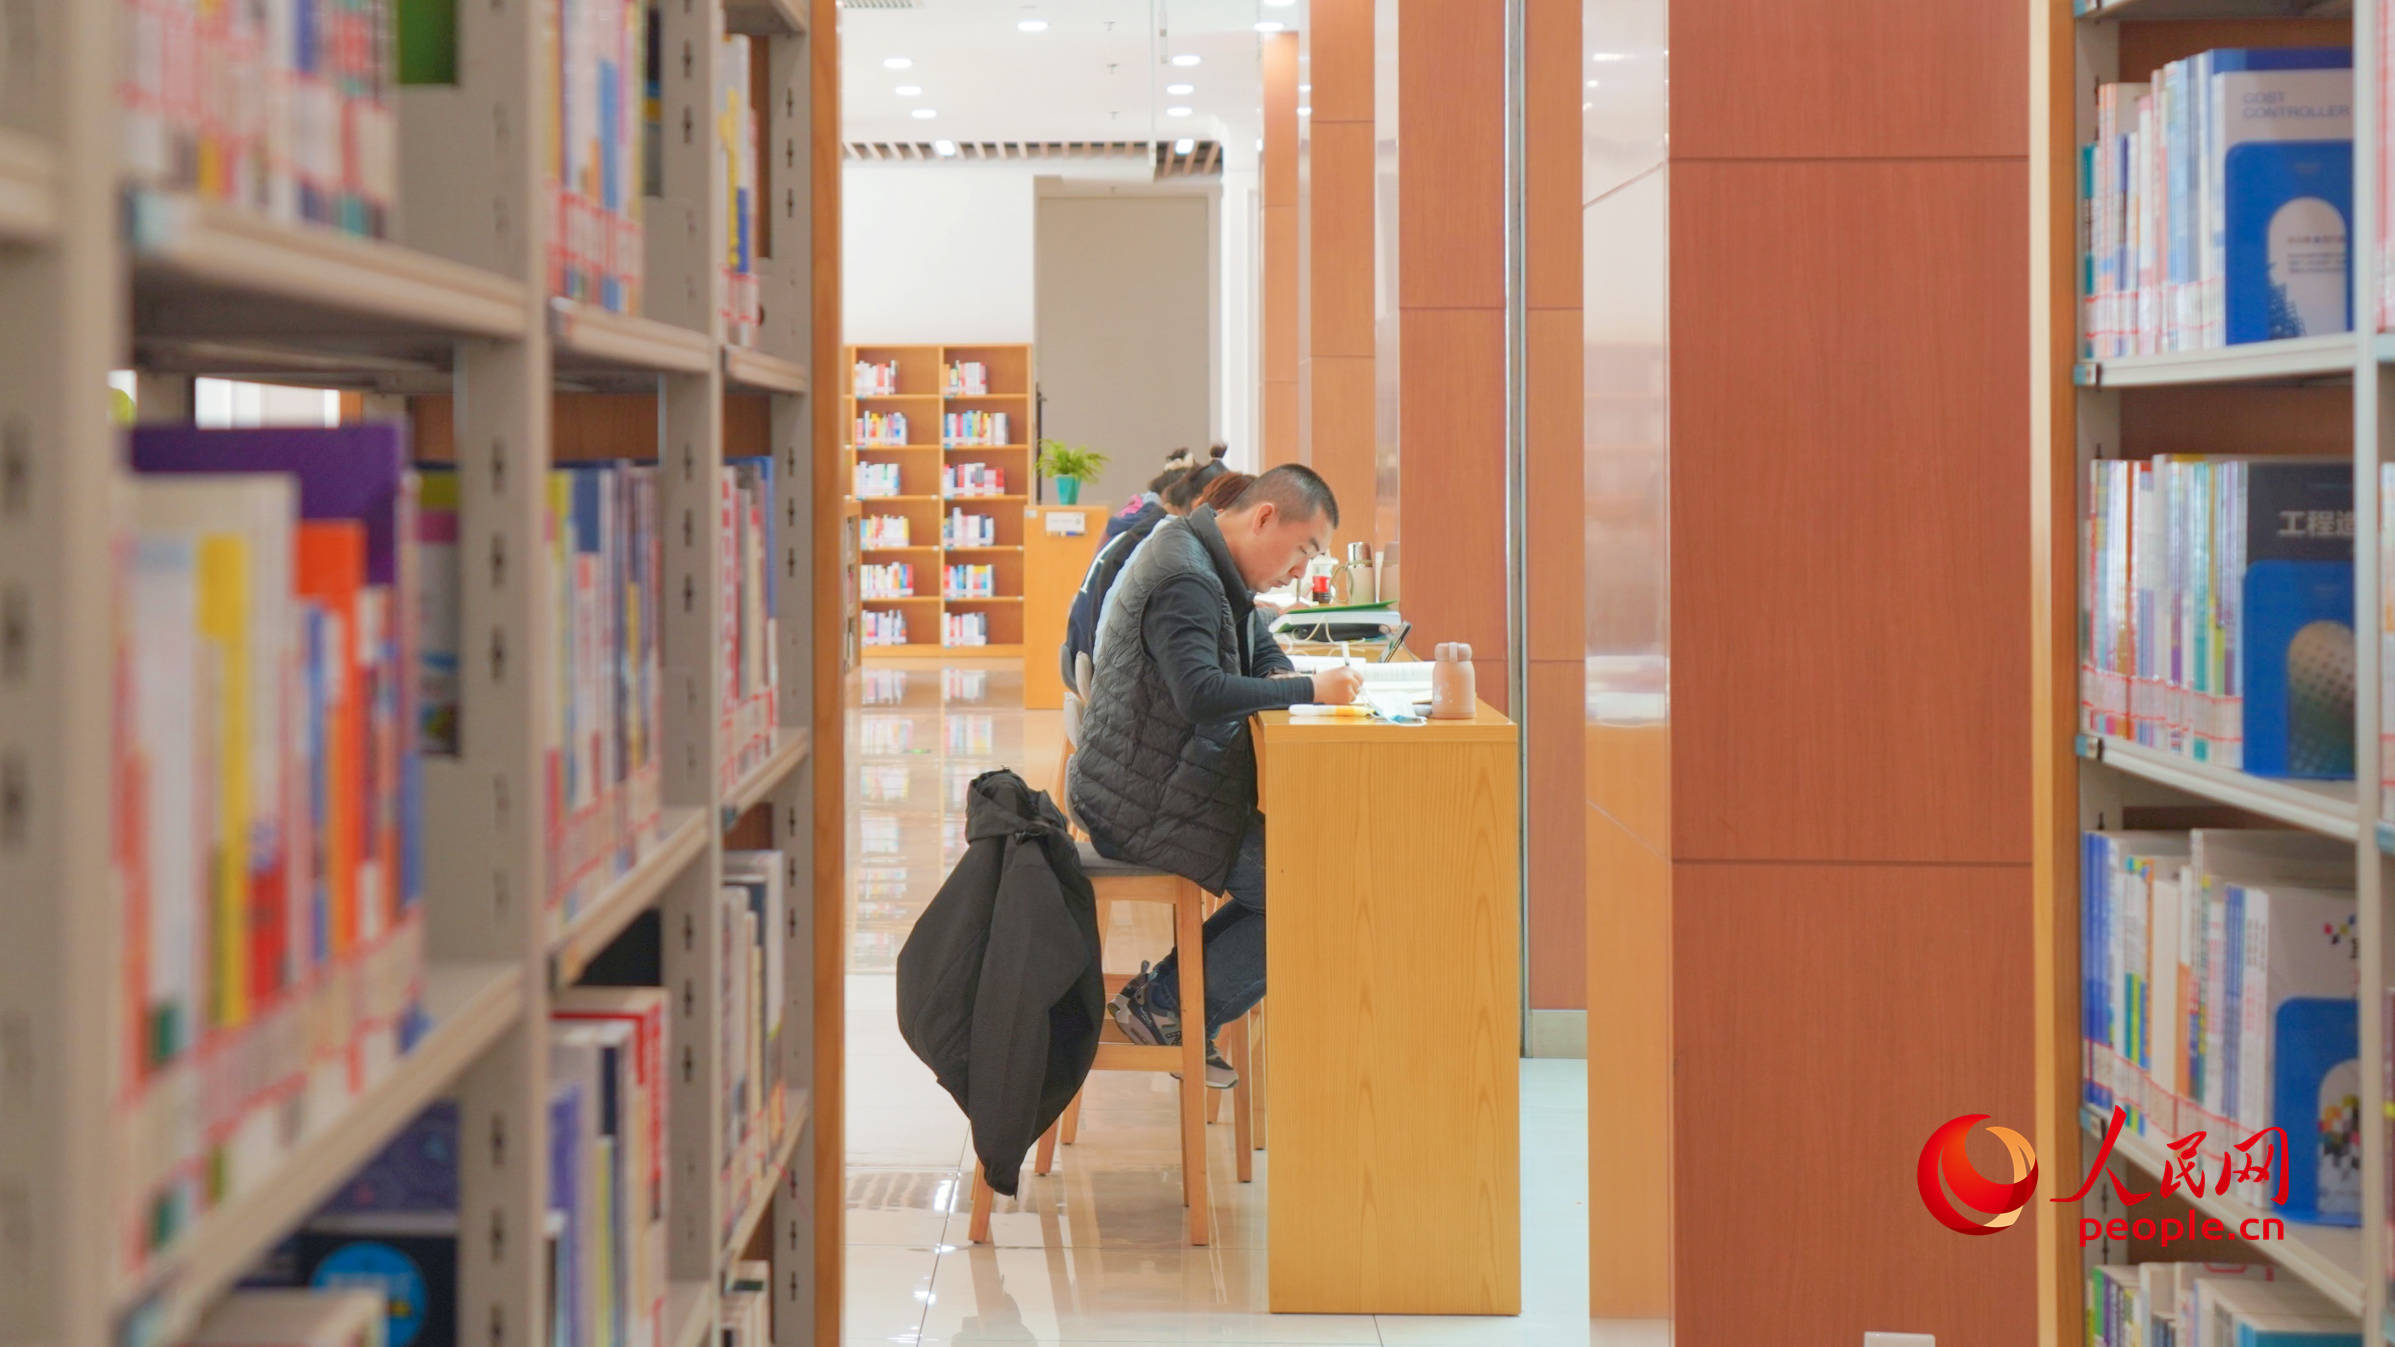 市民在图书馆看书学习。人民网 李龙摄